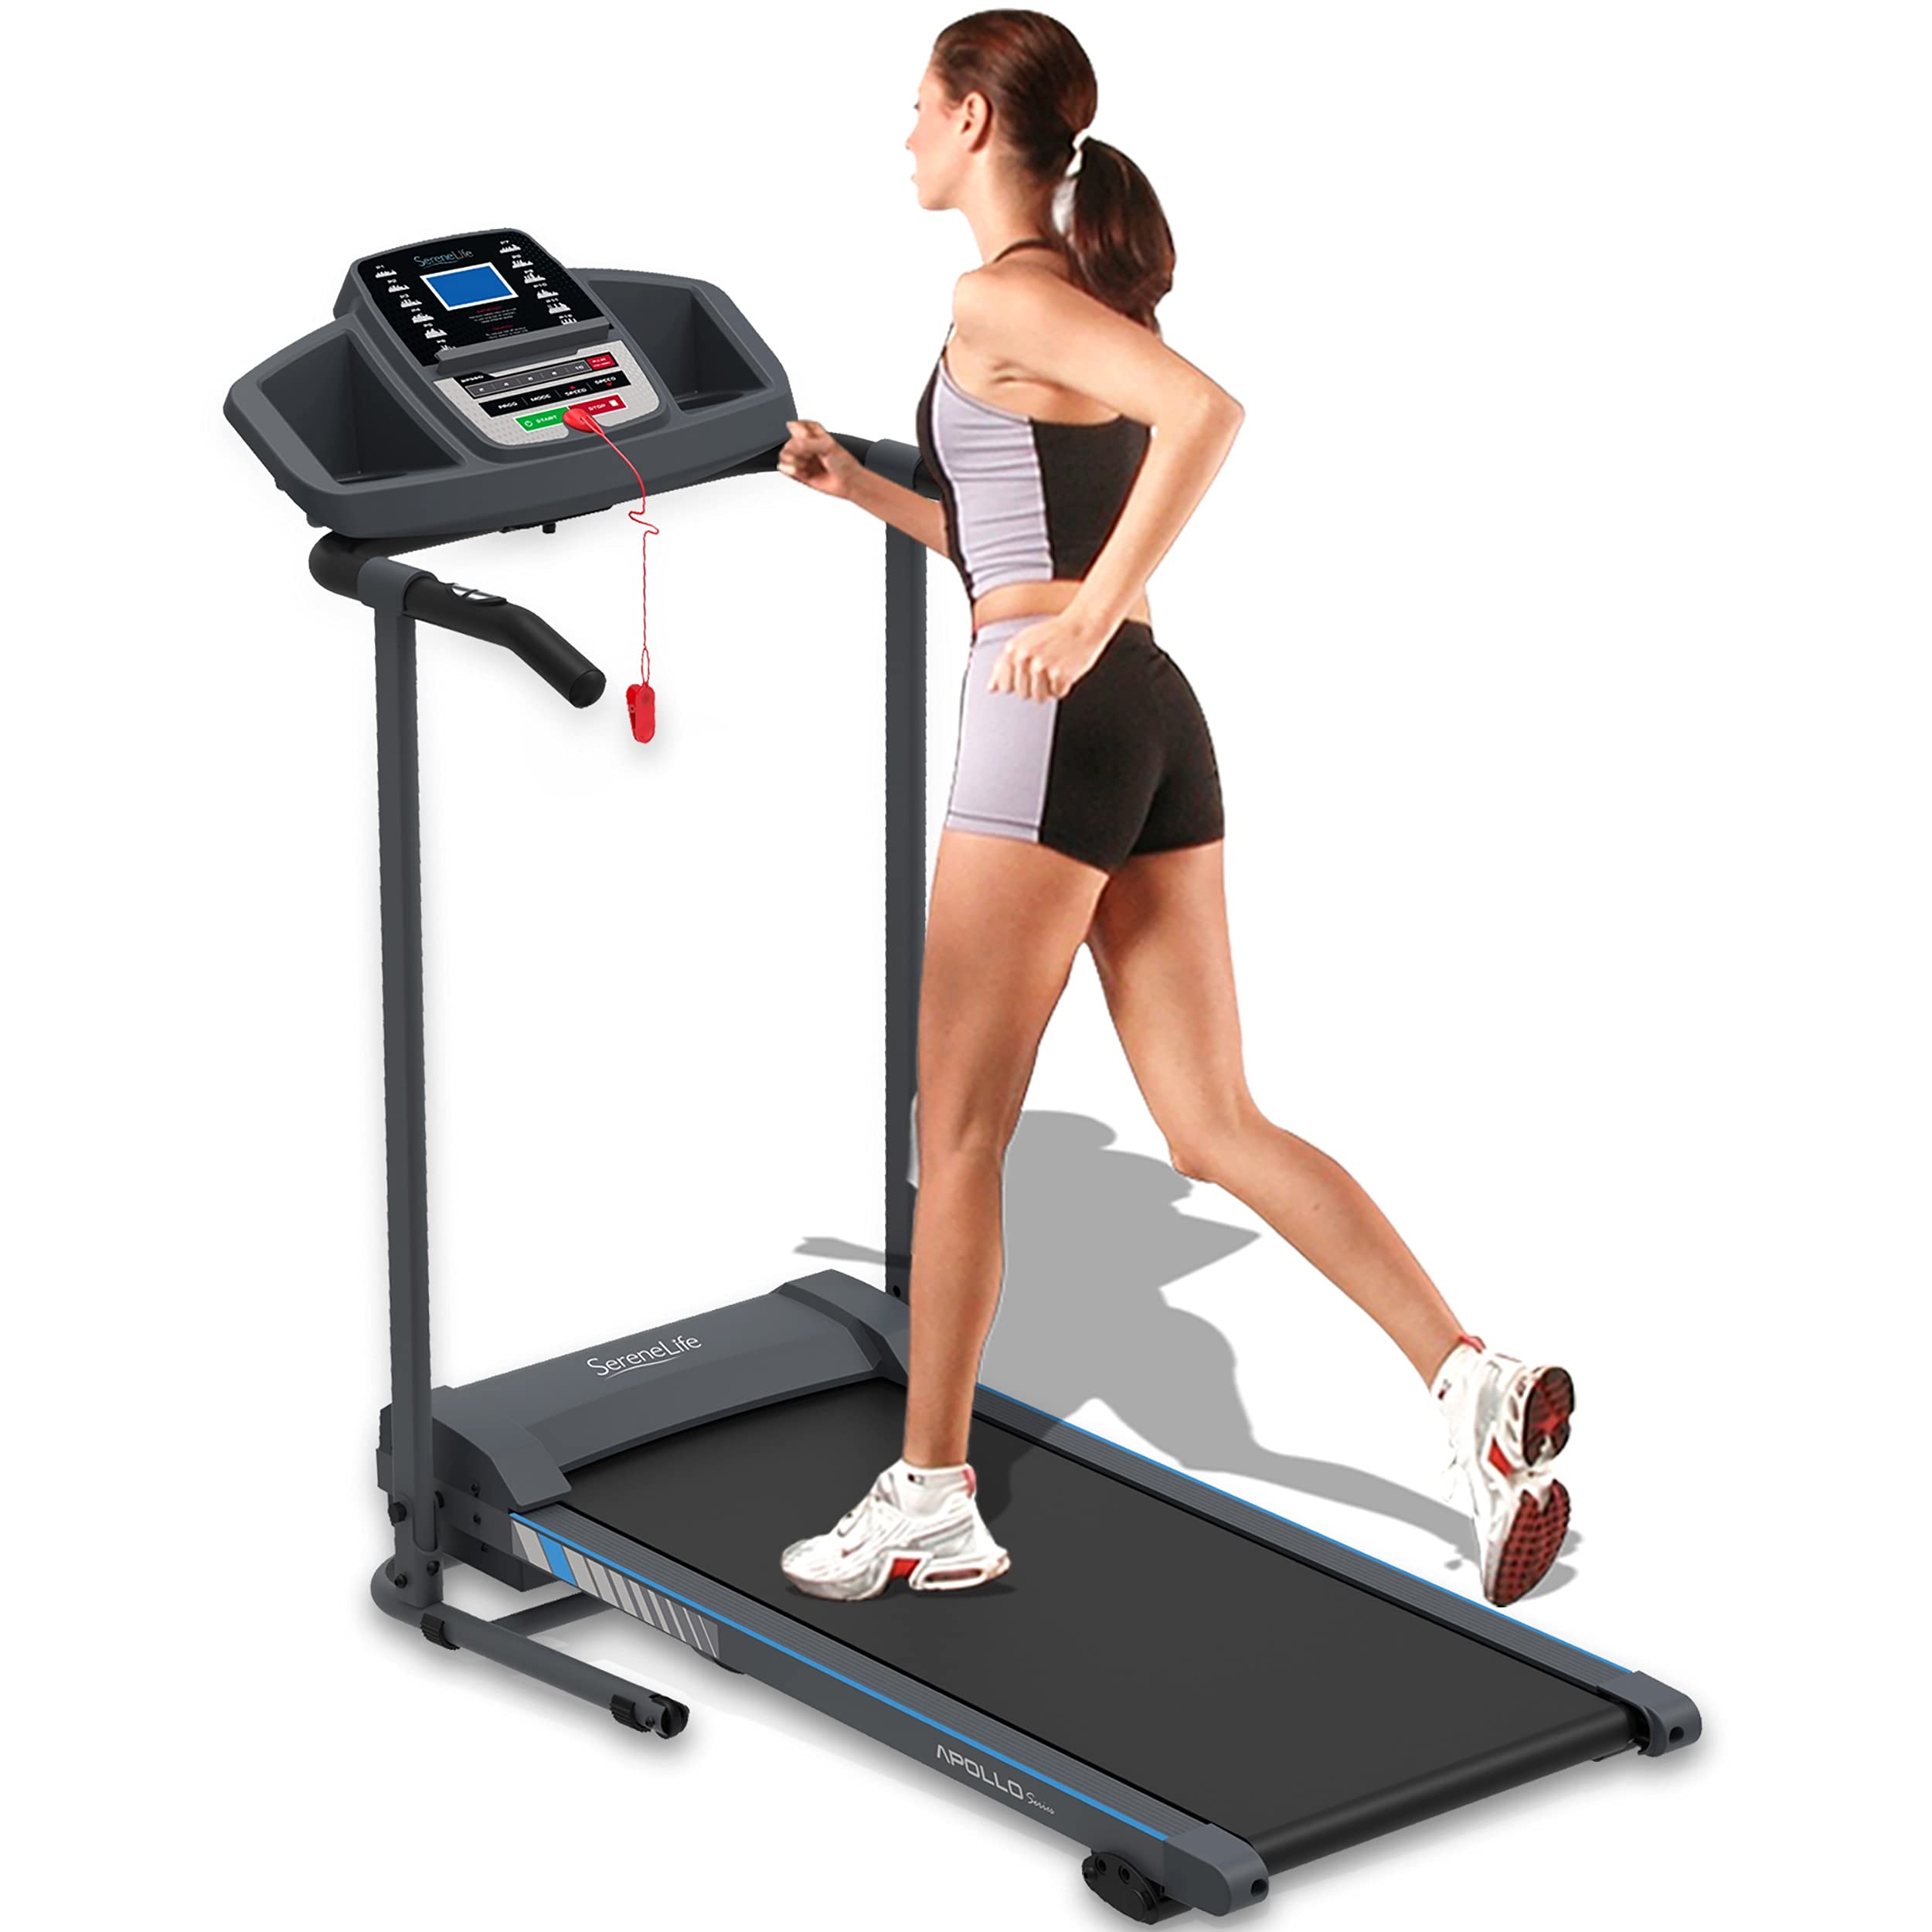  SereneLife Складная беговая дорожка - Складное домашнее фитнес-оборудование с ЖК-дисплеем для ходьбы и бега - Кард...